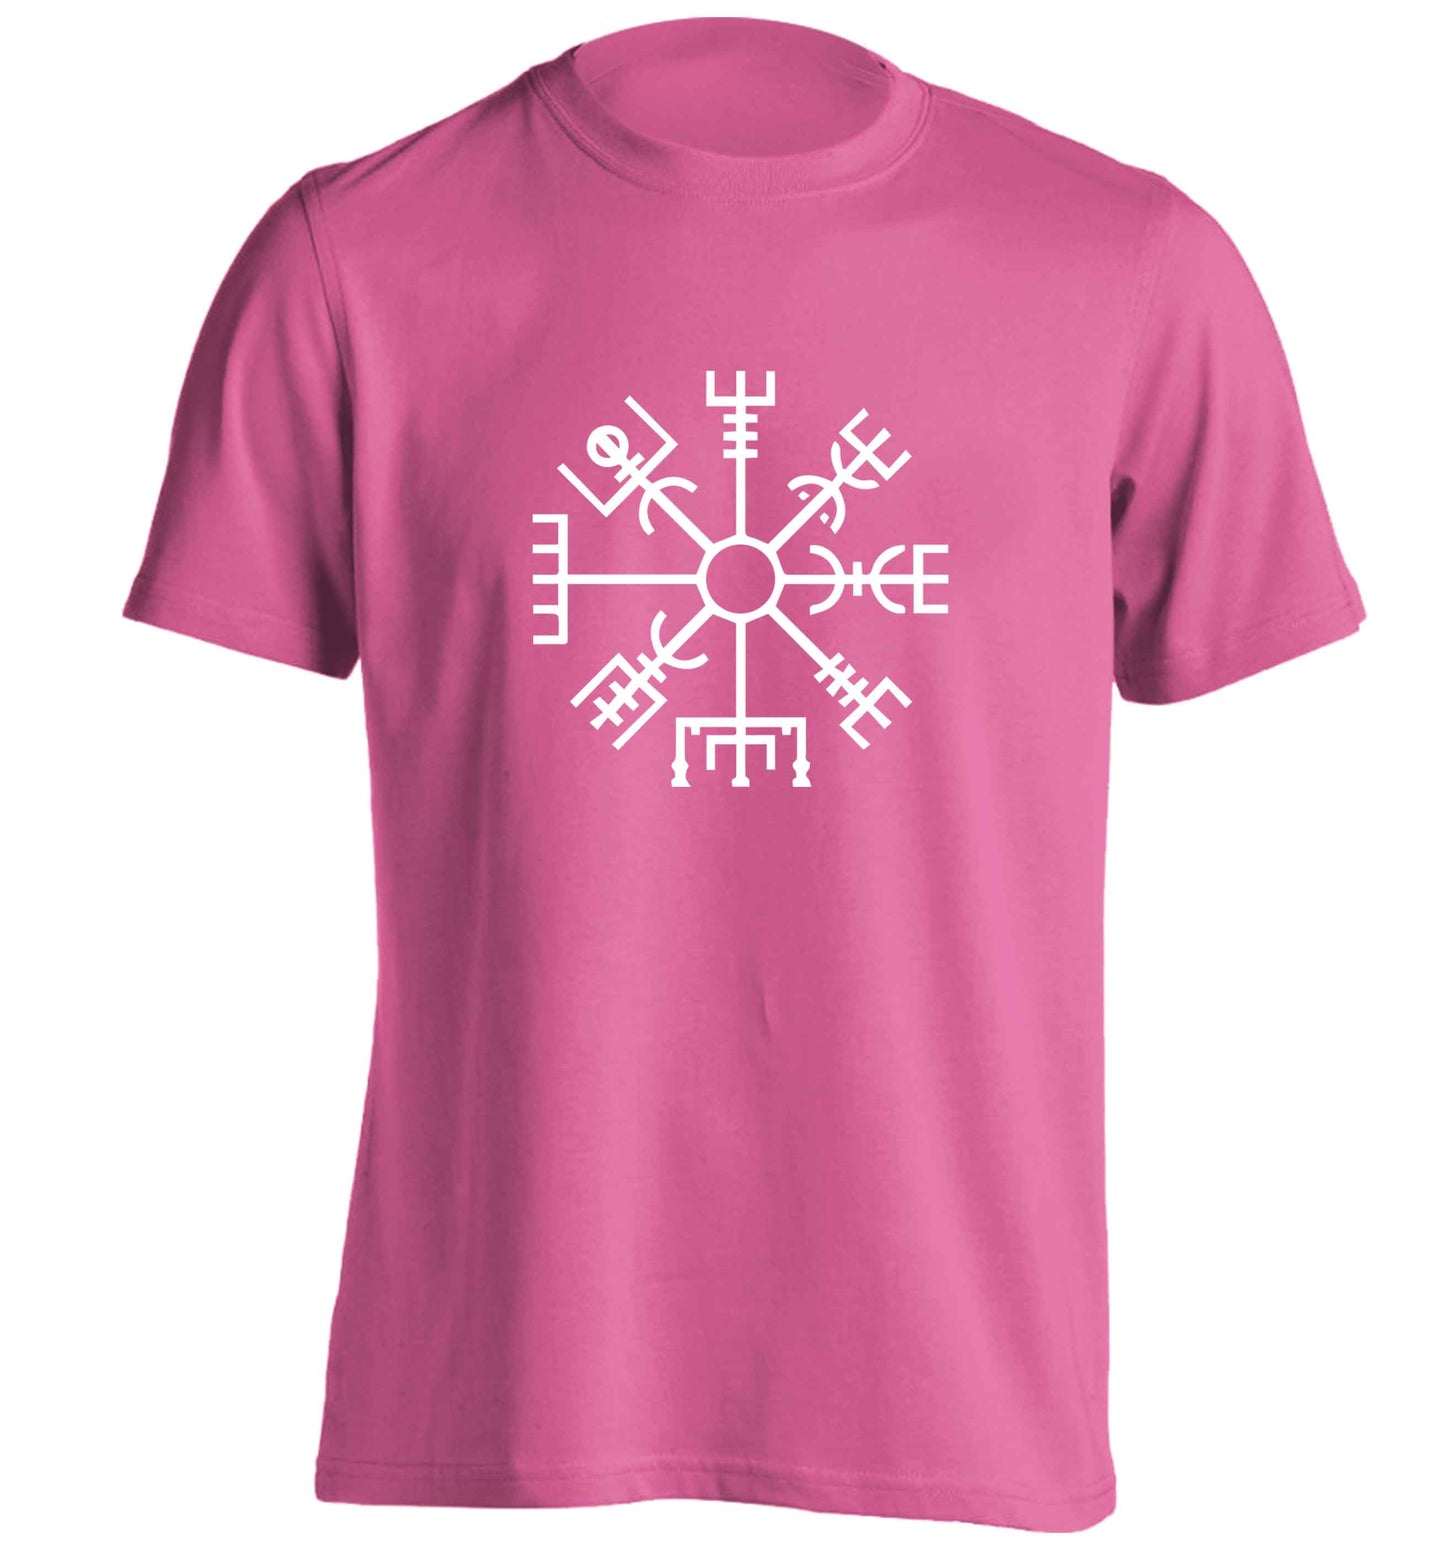 Vegv‚Äö√Ñ√¥sir wayfinder adults unisex pink Tshirt 2XL